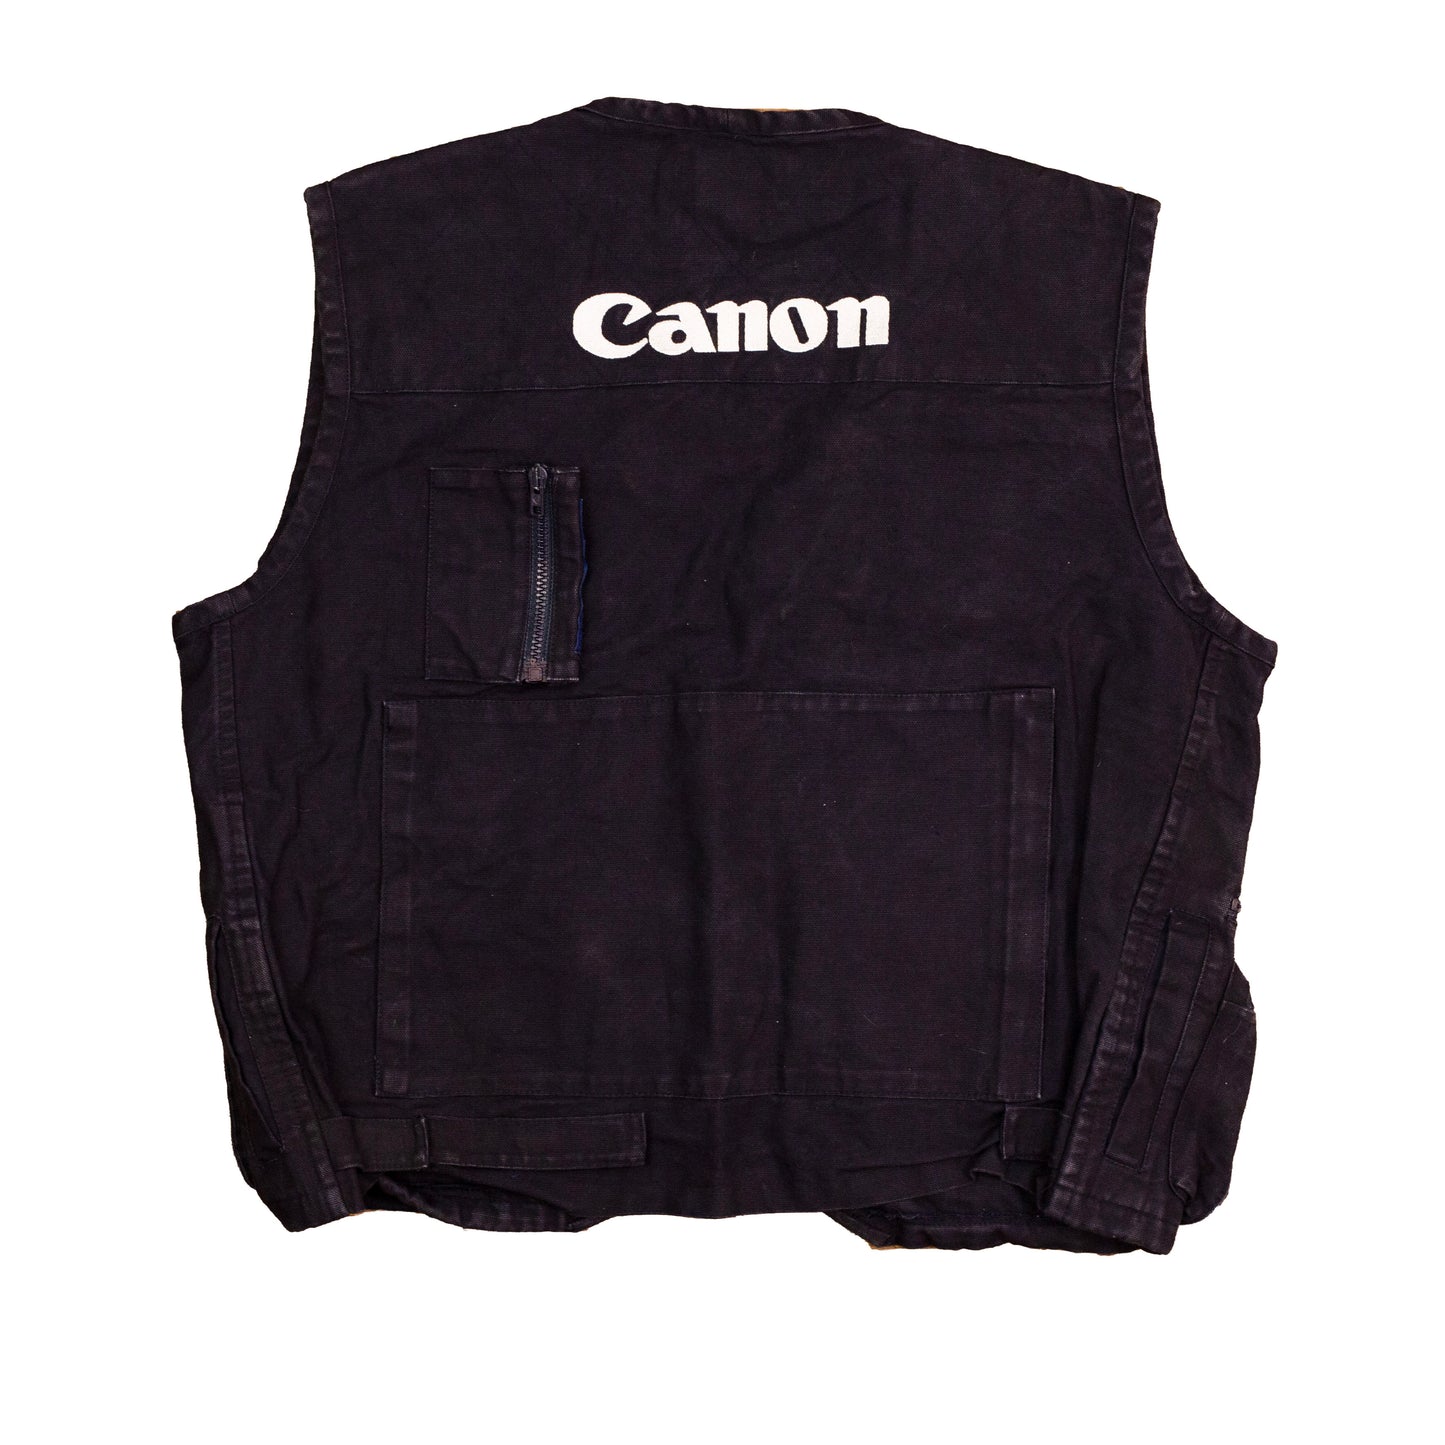 Vintage Canon Pro Gear Vest